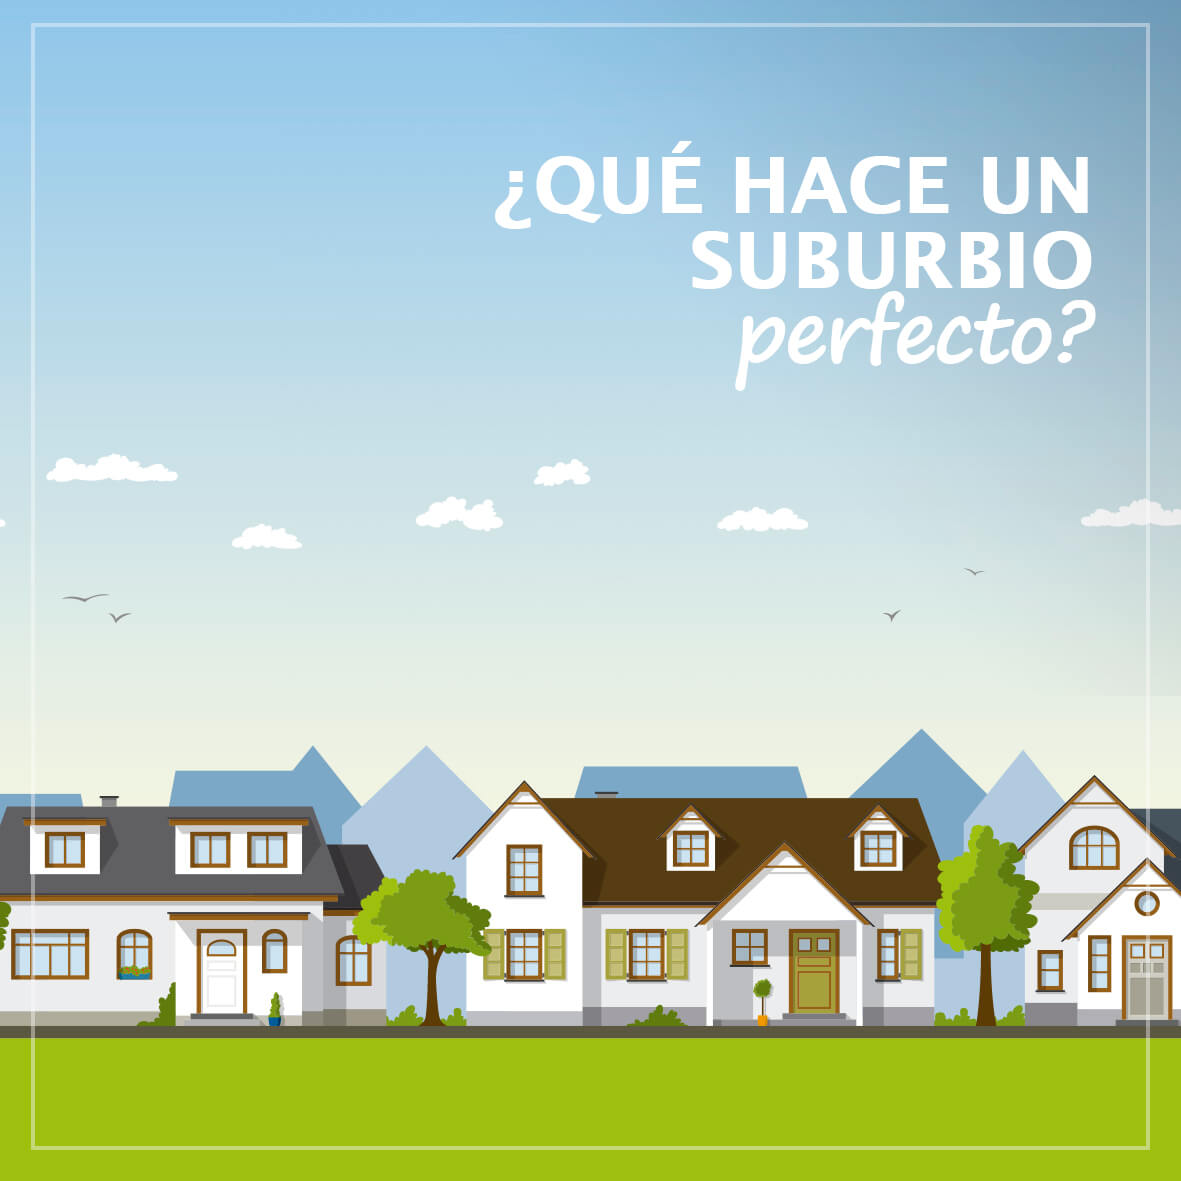 ¿Qué hace un suburbio perfecto?